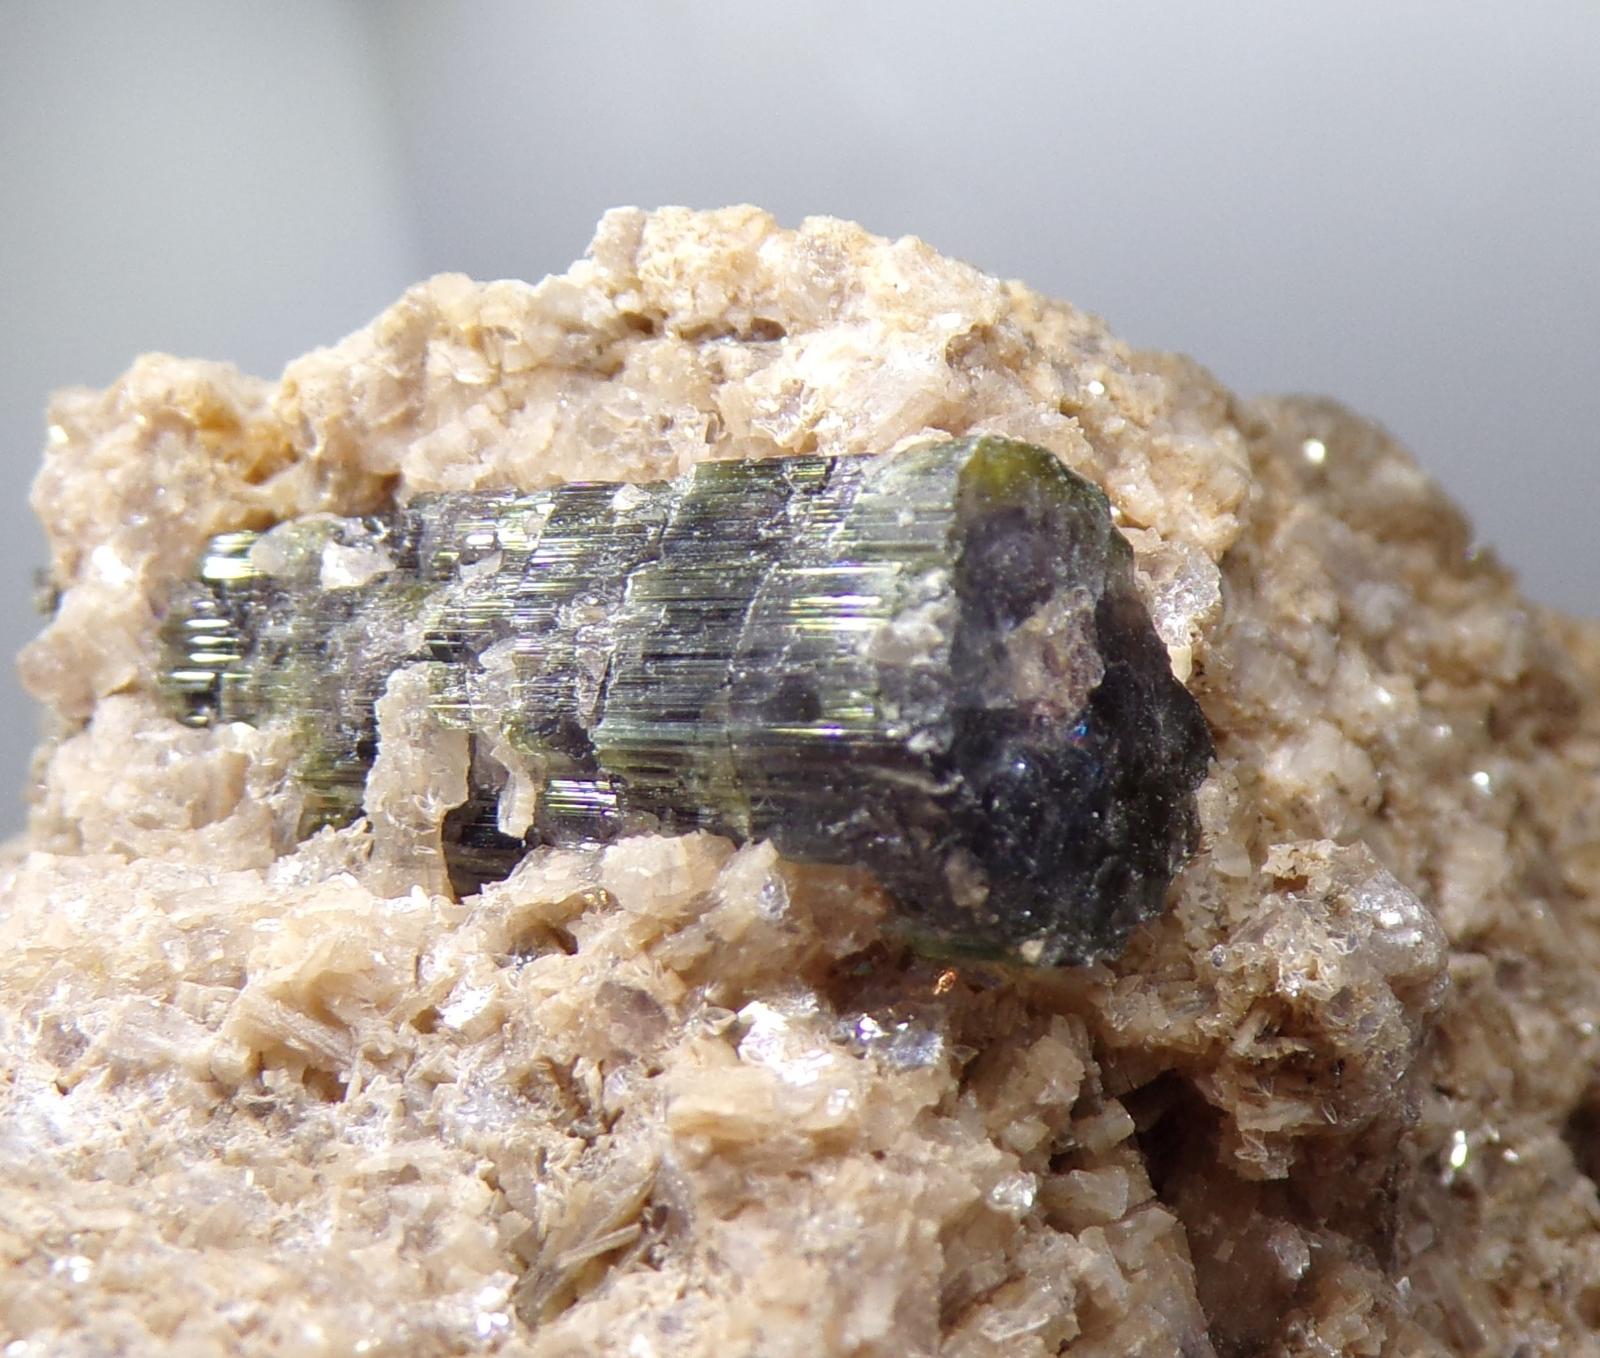 Turmalín Modrý + Zelený XL Krystal v Matrixu - Pákistán - 77,7g - TOP - Minerály a skameneliny